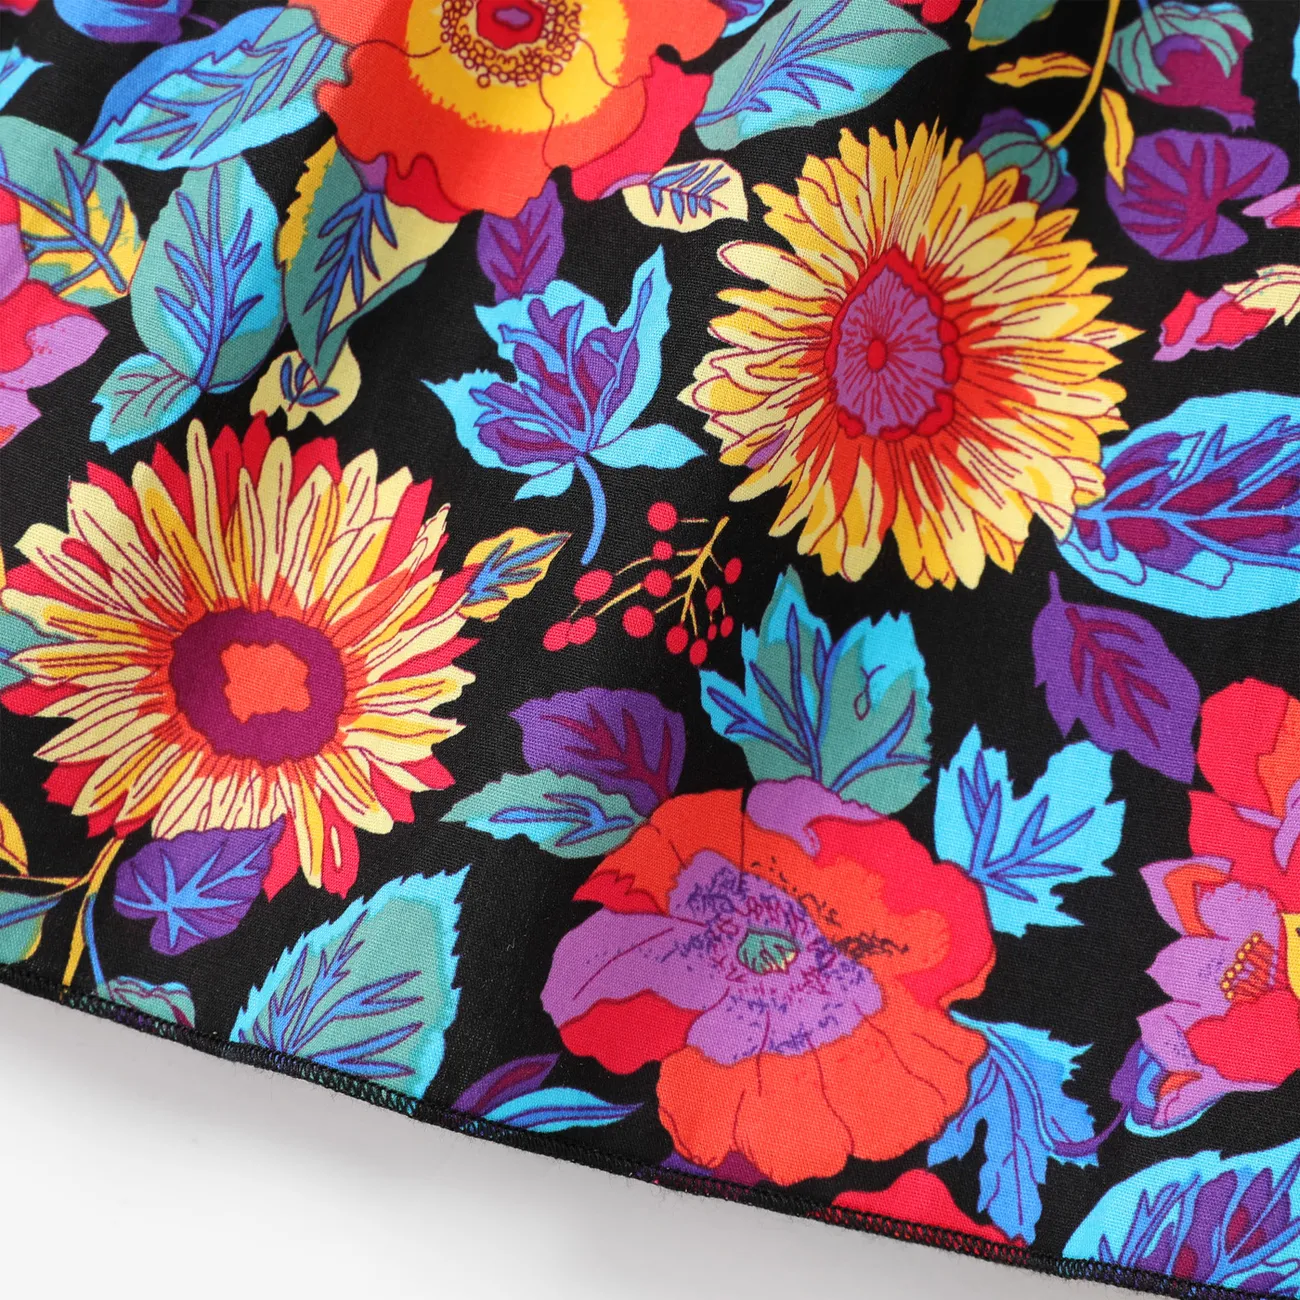 Kid Girl Allover Floral Print Sling Dress Multi-color big image 1